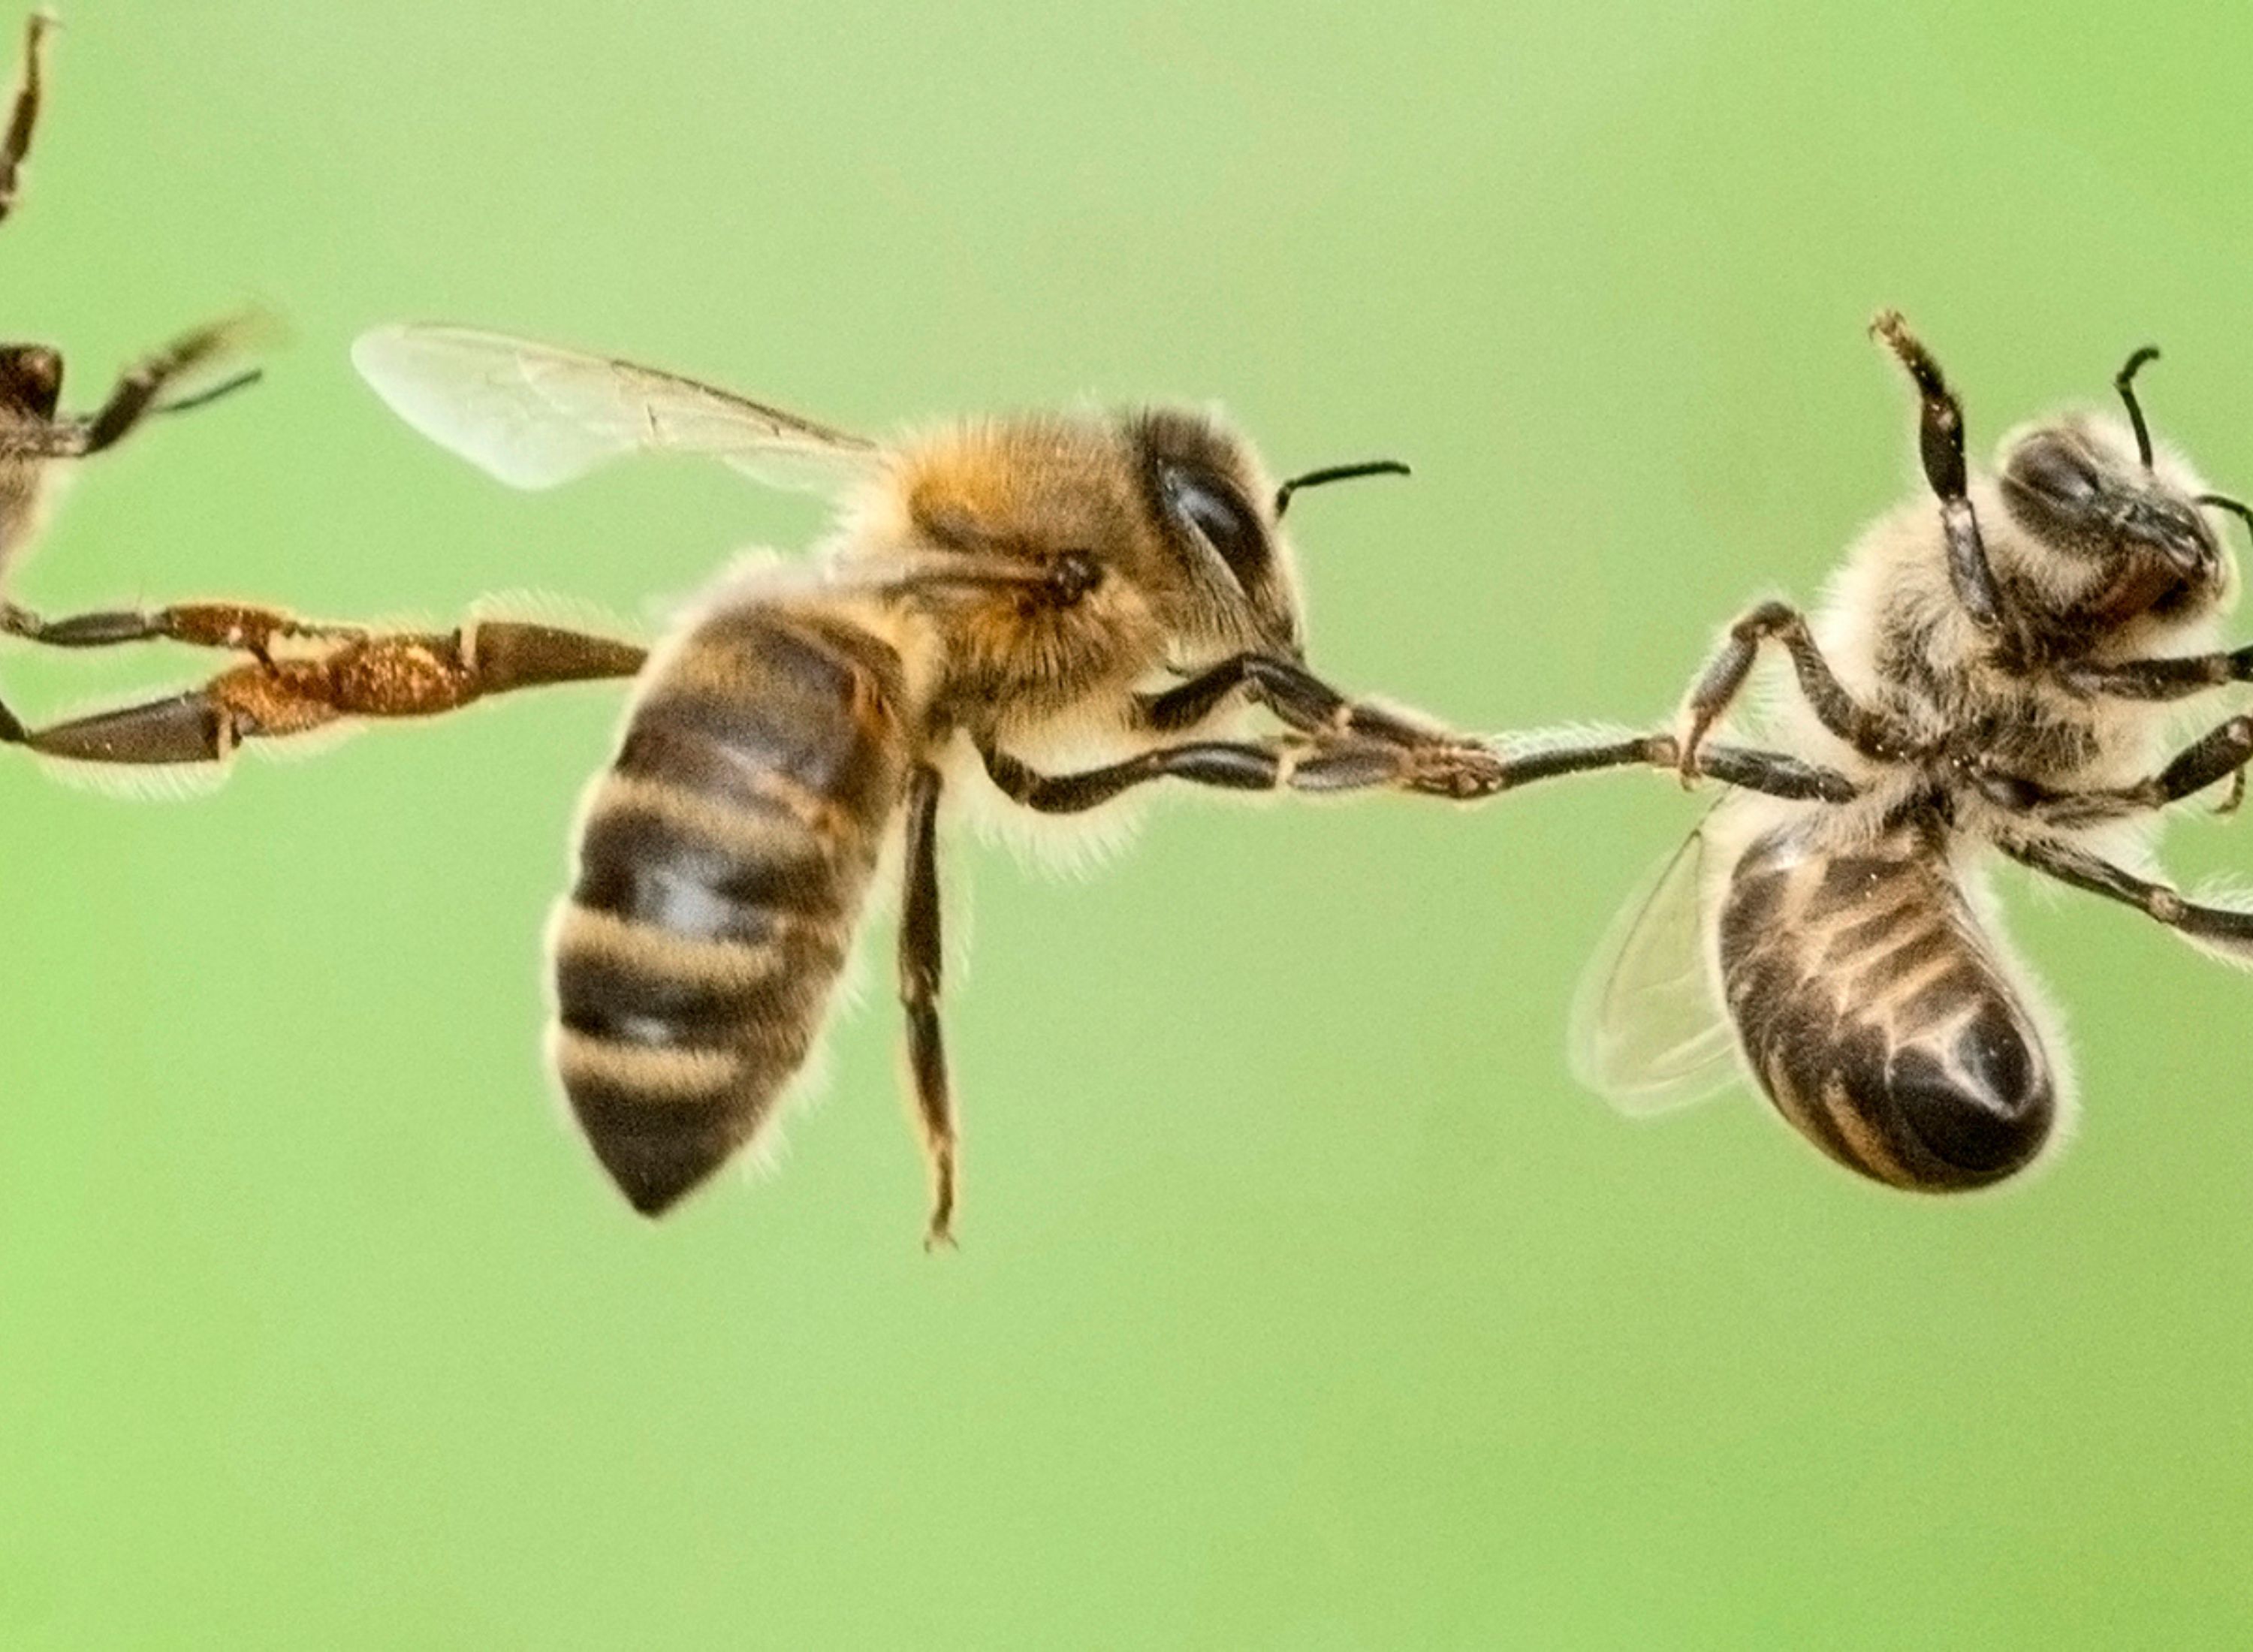 Festooning honey bees